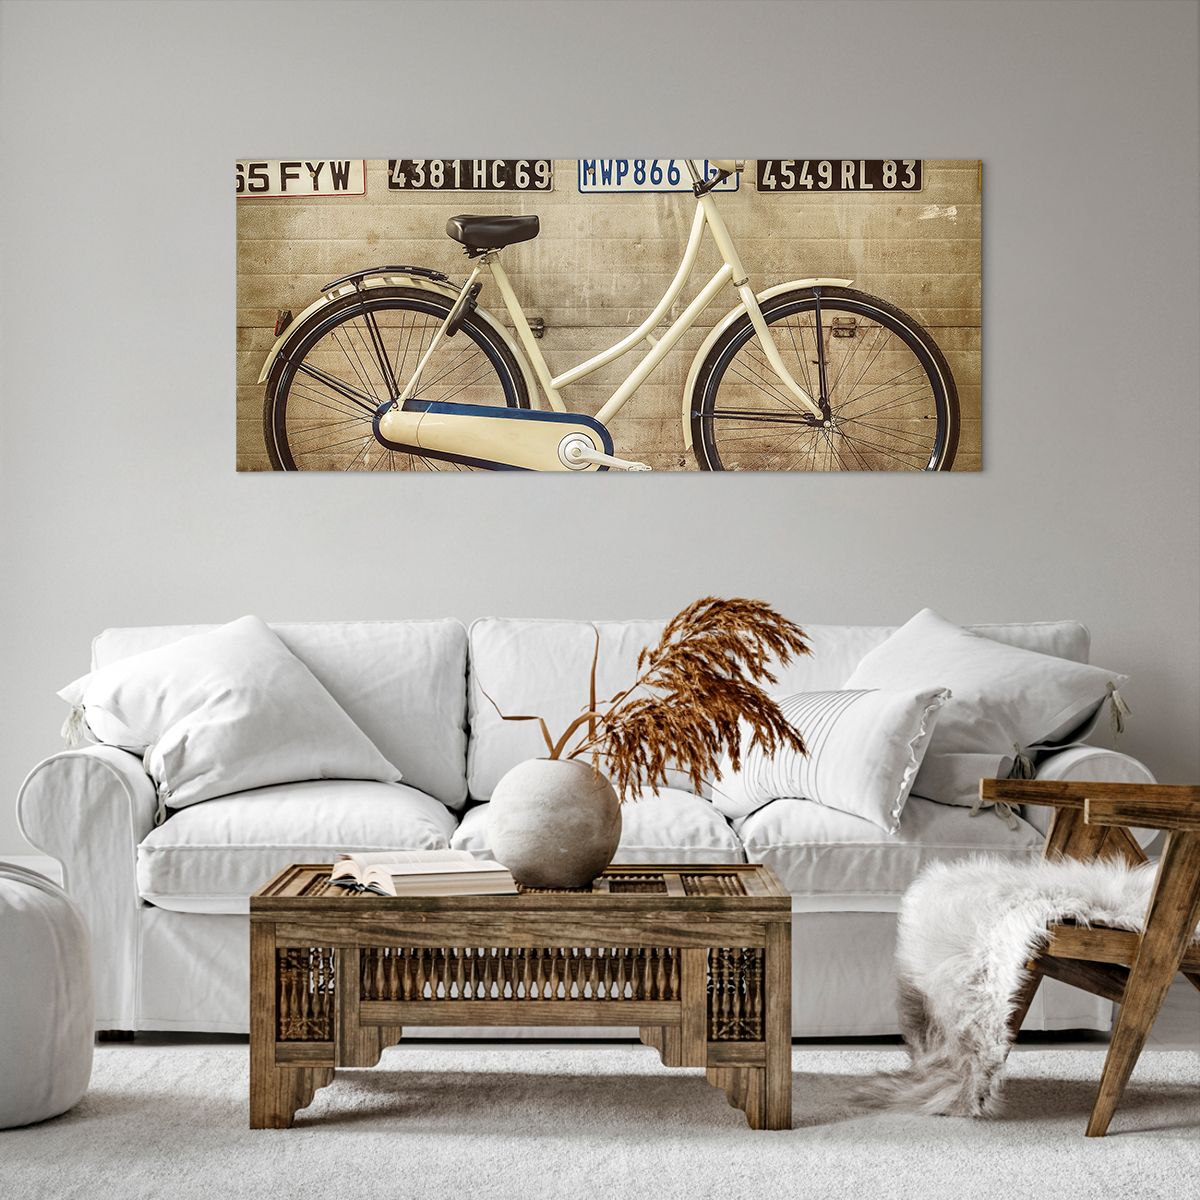 Bild auf Leinwand Wandgemälde, Bild auf Leinwand Fahrrad, Bild auf Leinwand Platten, Bild auf Leinwand Jahrgang, Bild auf Leinwand Kunst